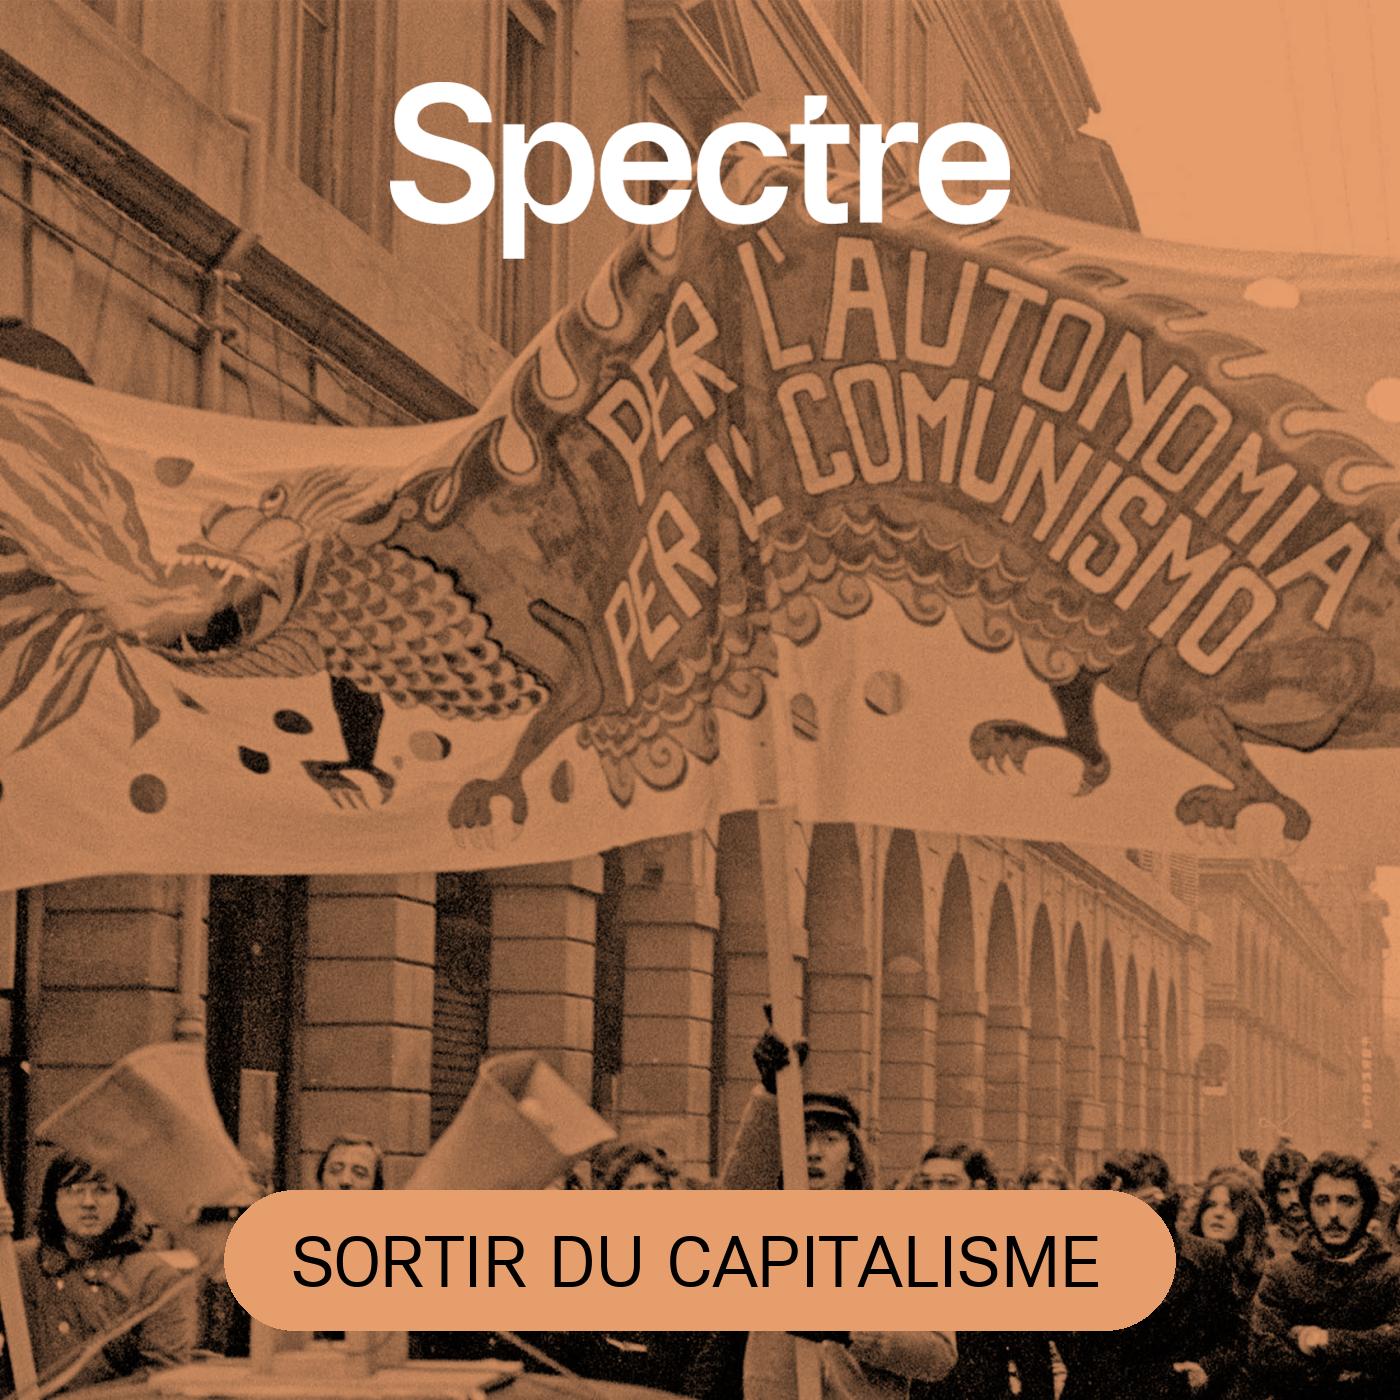 La théorie postcoloniale et le spectre du Capital